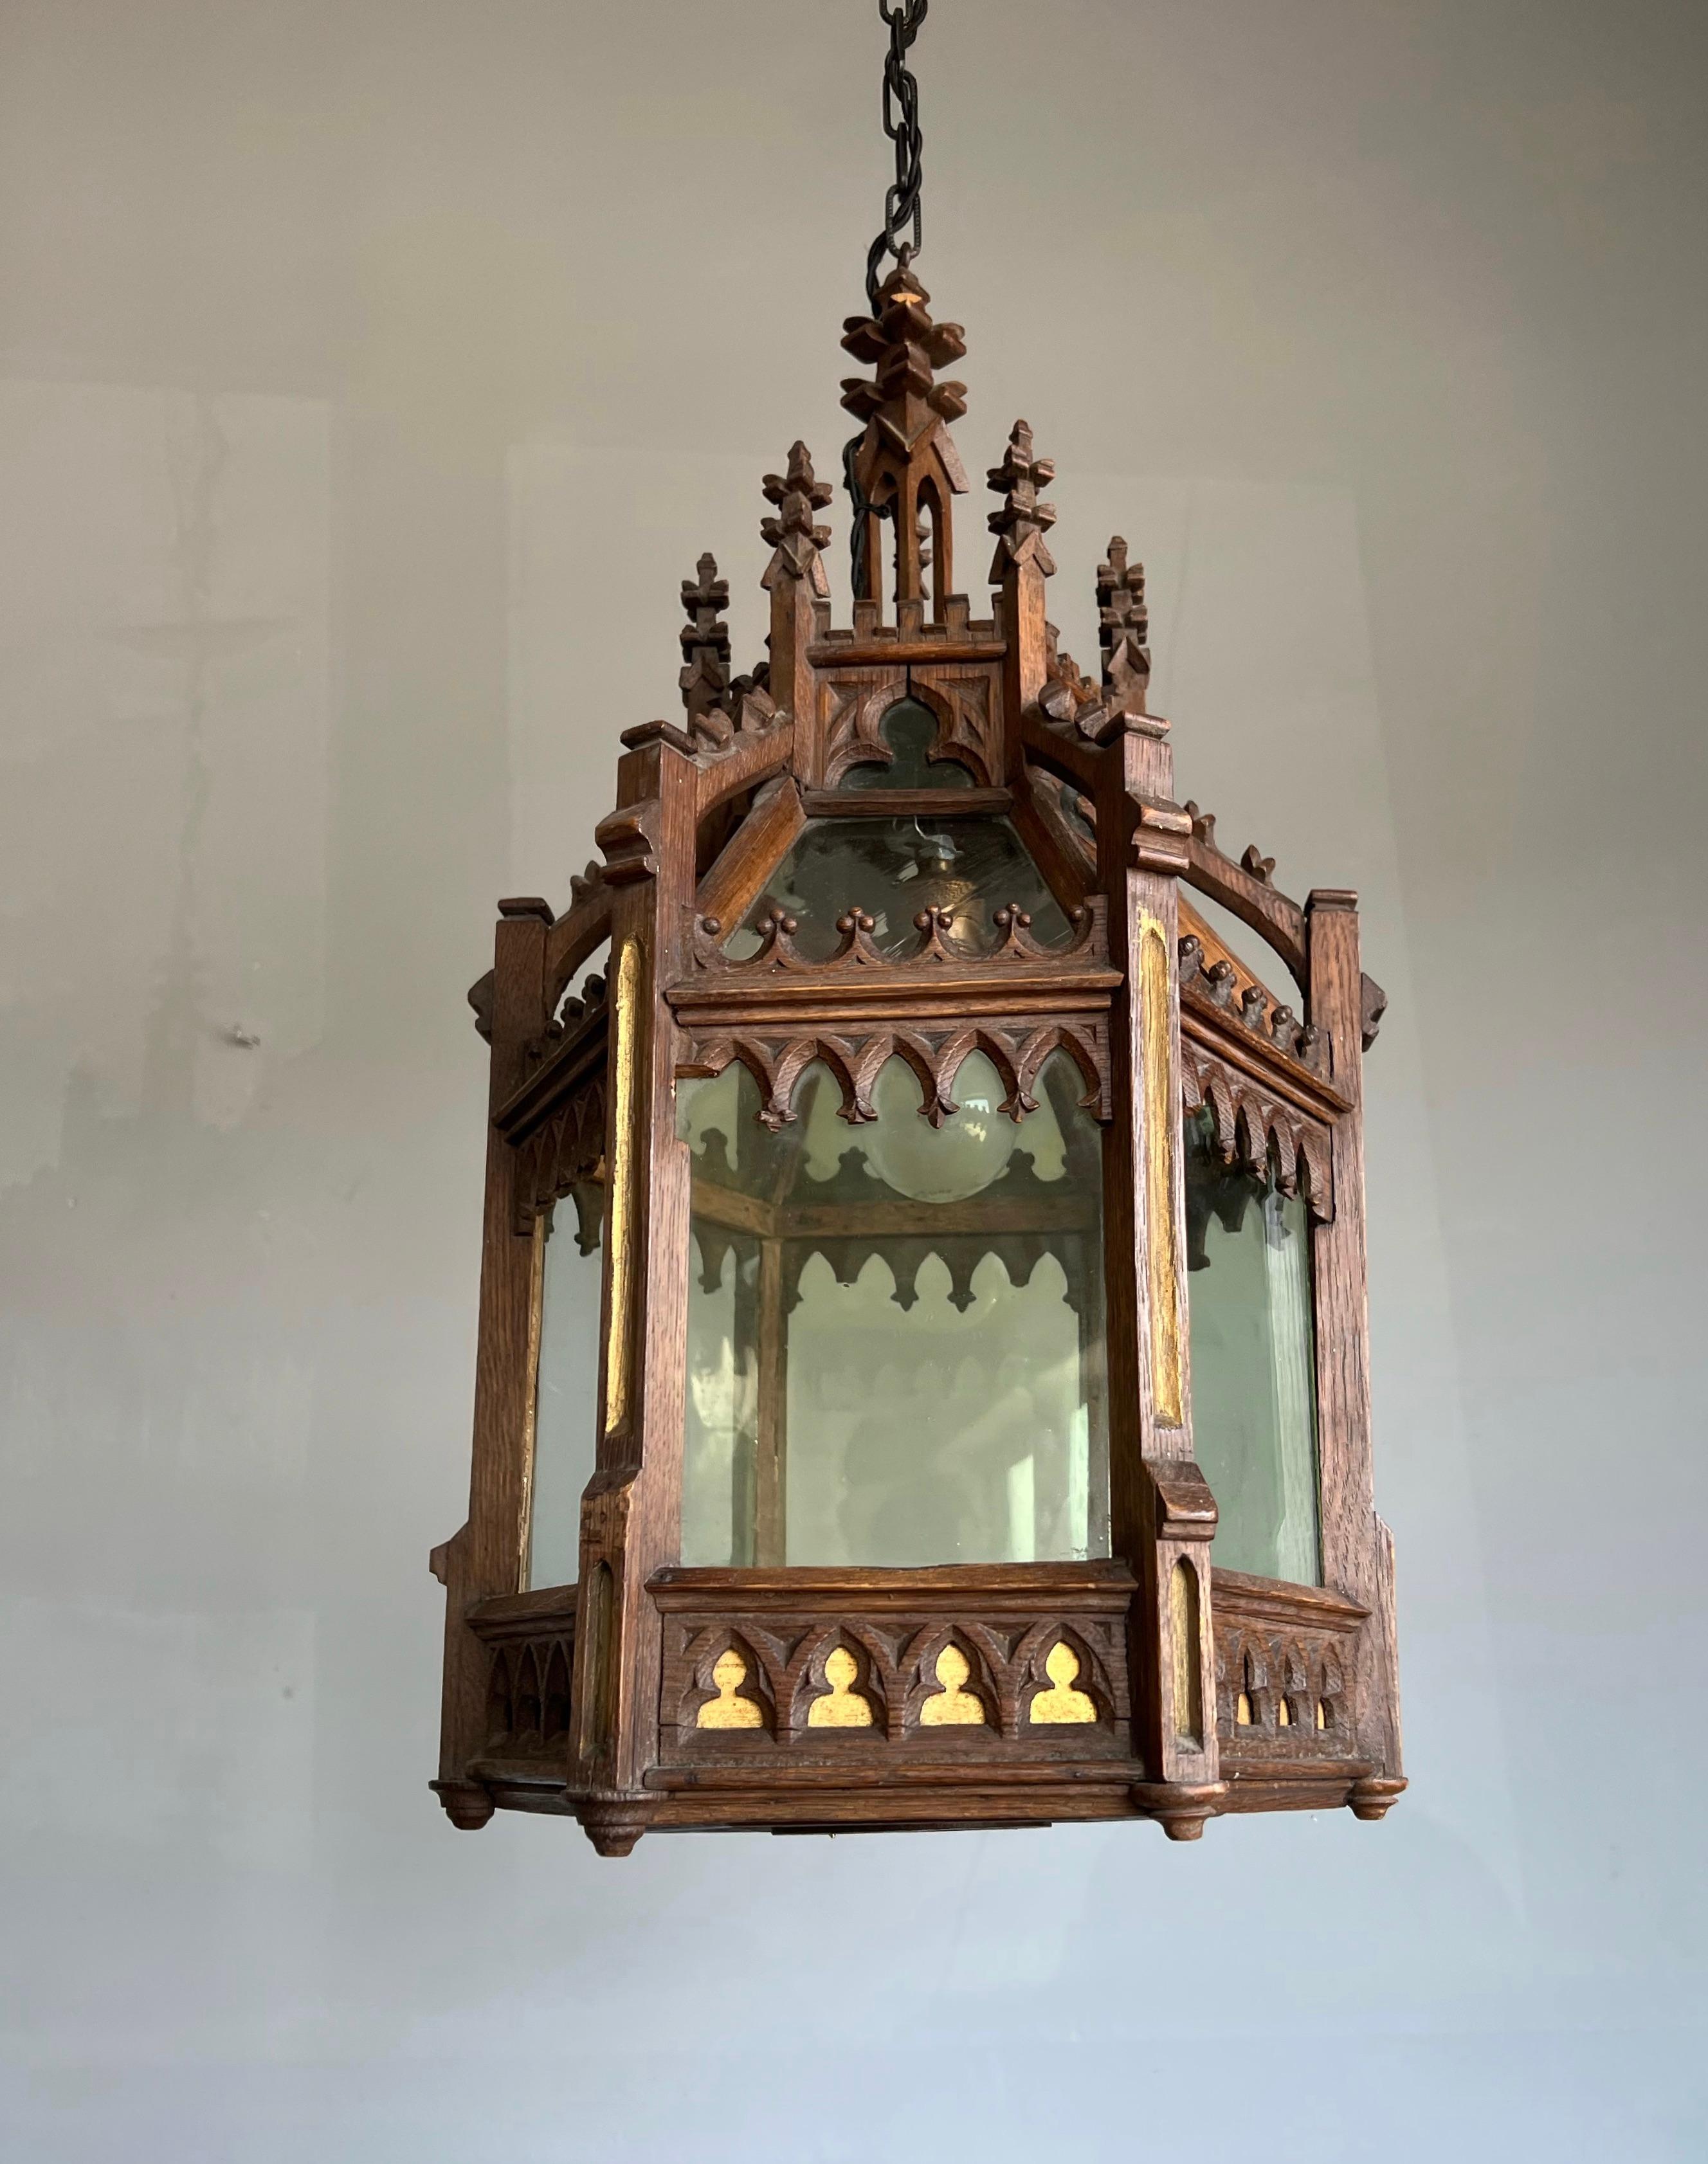 Eine wirklich beeindruckende und großartig verarbeitete, sechseckige gotische Leuchte.

Wenn Sie ein Sammler von wirklich erstaunlichen gotischen Antiquitäten sind, dann könnte dieser große und möglicherweise einzigartige Anhänger bald zu Ihnen